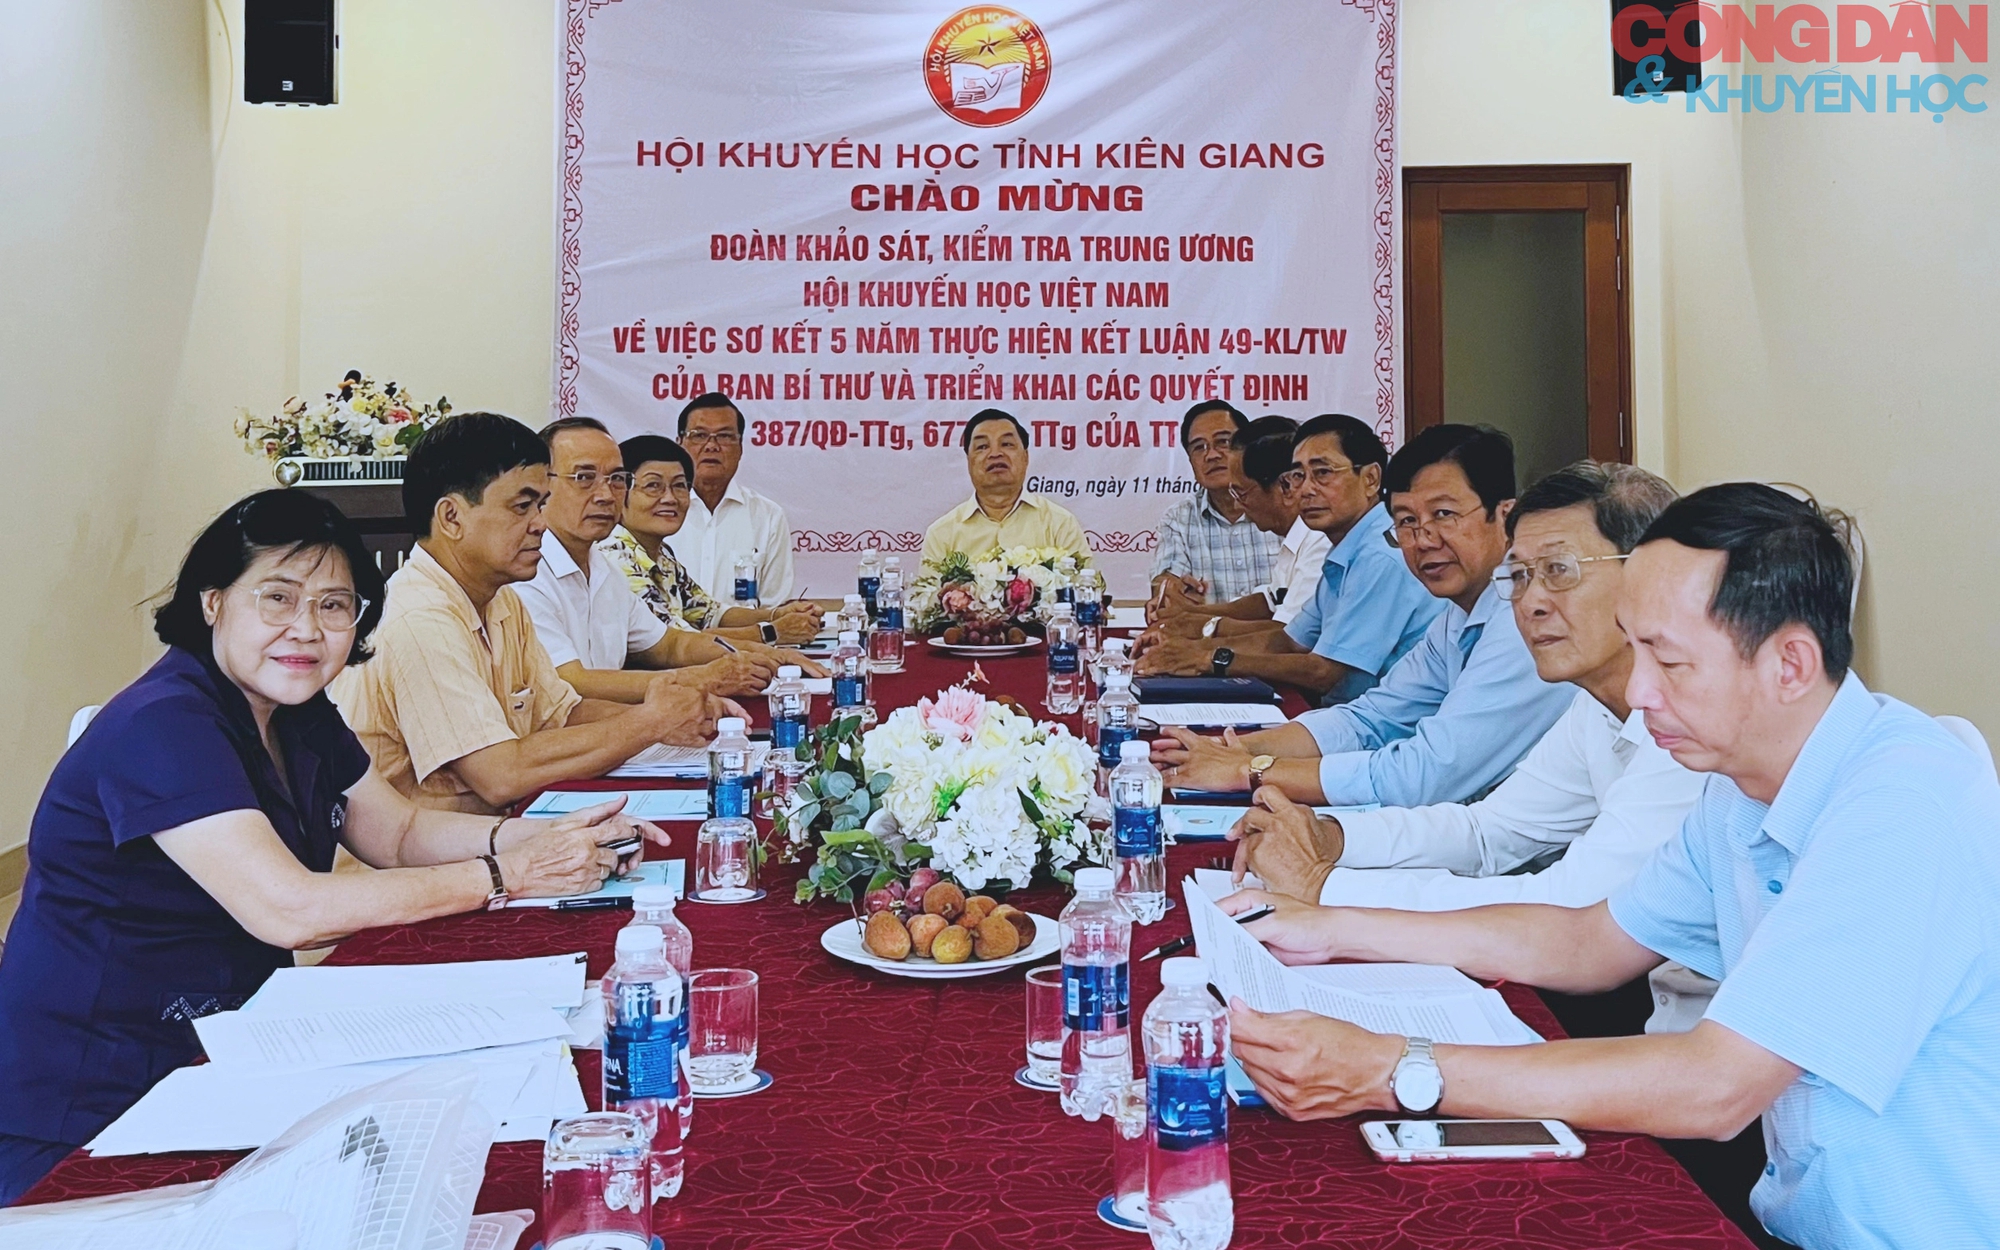 Đoàn Kiểm tra Trung ương Hội Khuyến học Việt Nam làm việc tại Kiên Giang- Ảnh 1.